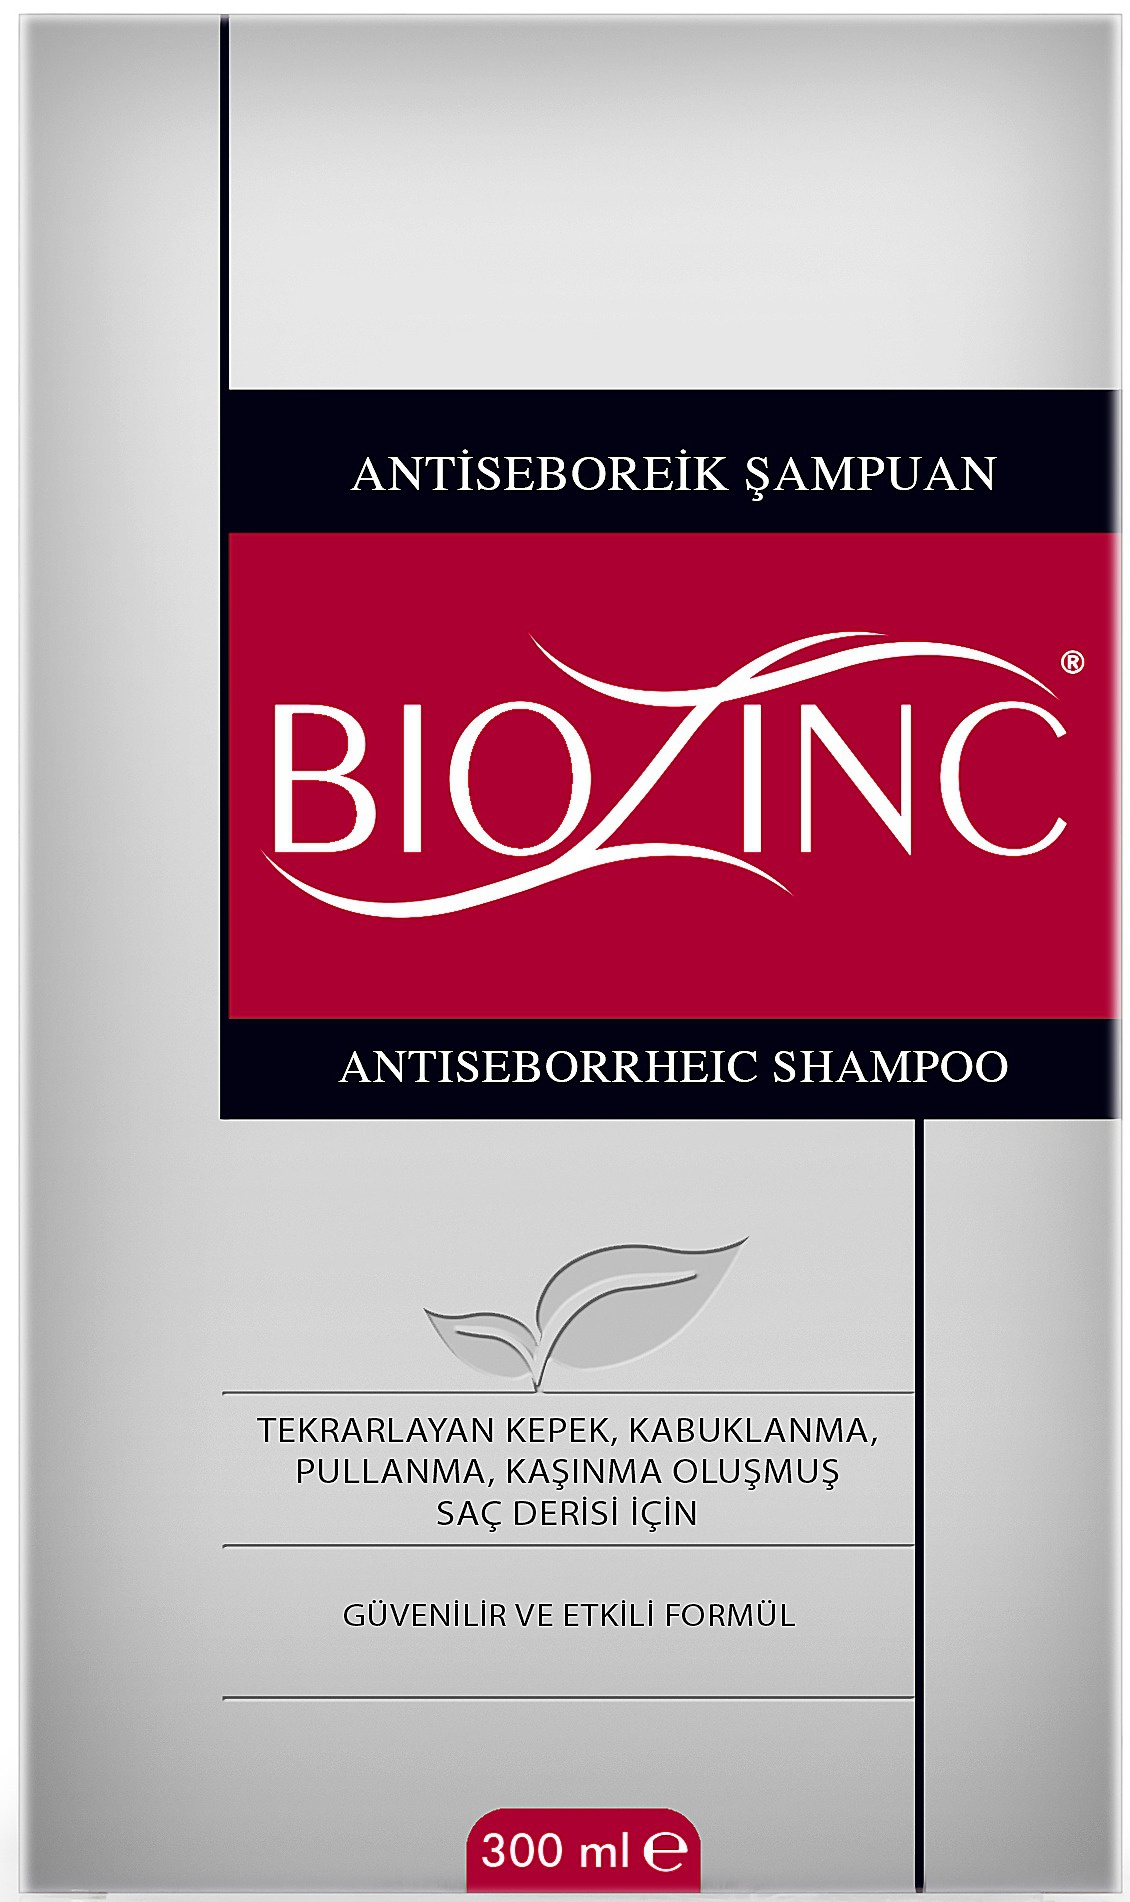 Biozinc Antiseborrheic Shampoo